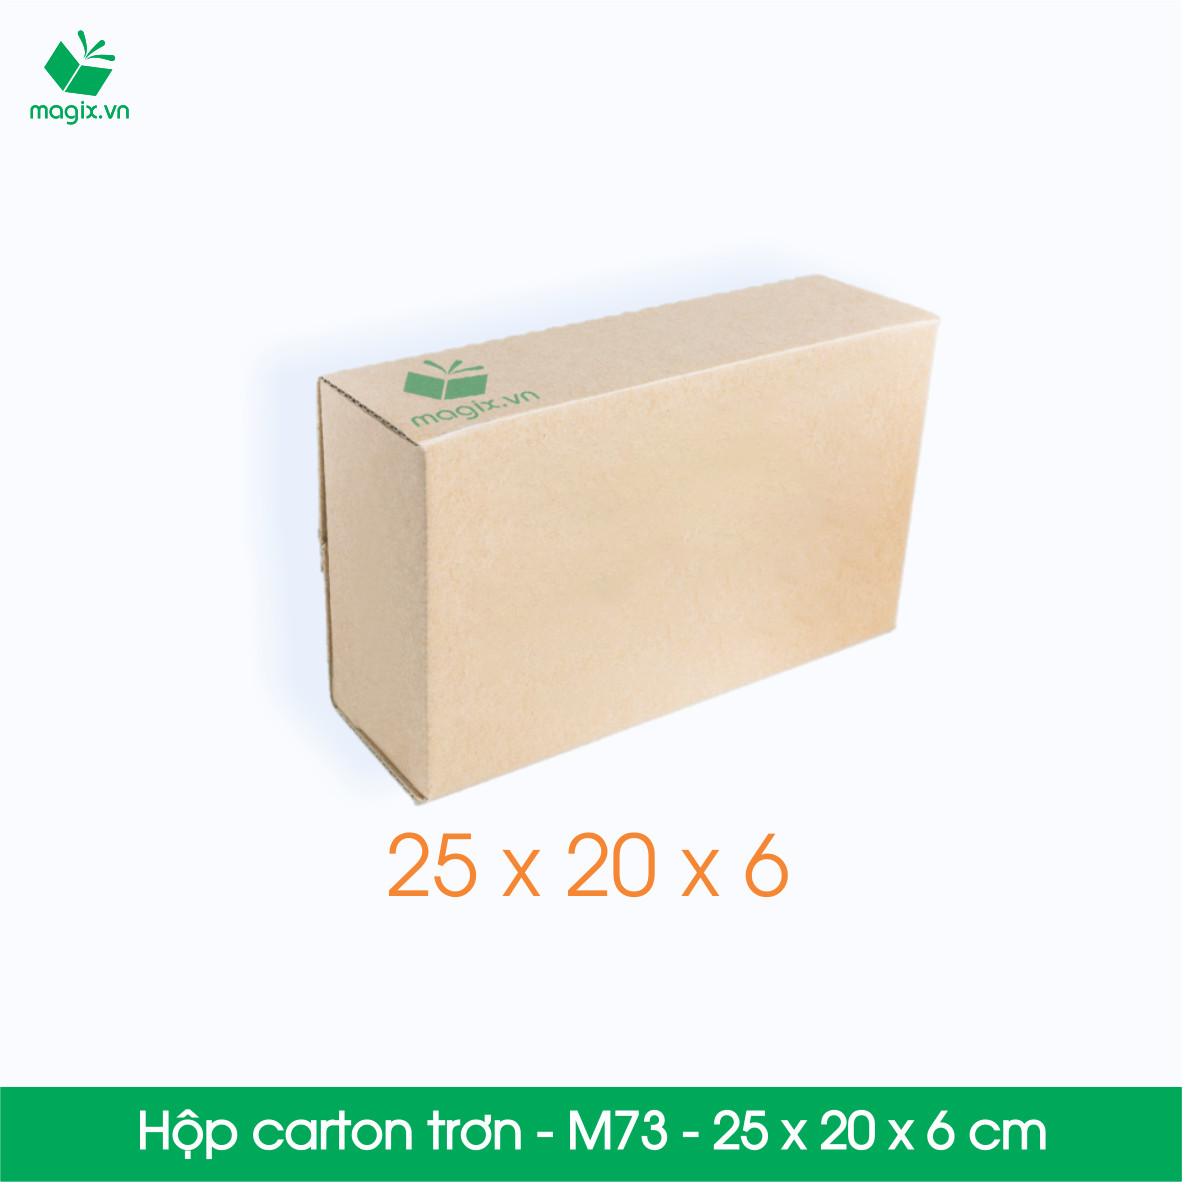 M73 - 25x20x6 cm - 50 Thùng hộp carton trơn đóng hàng